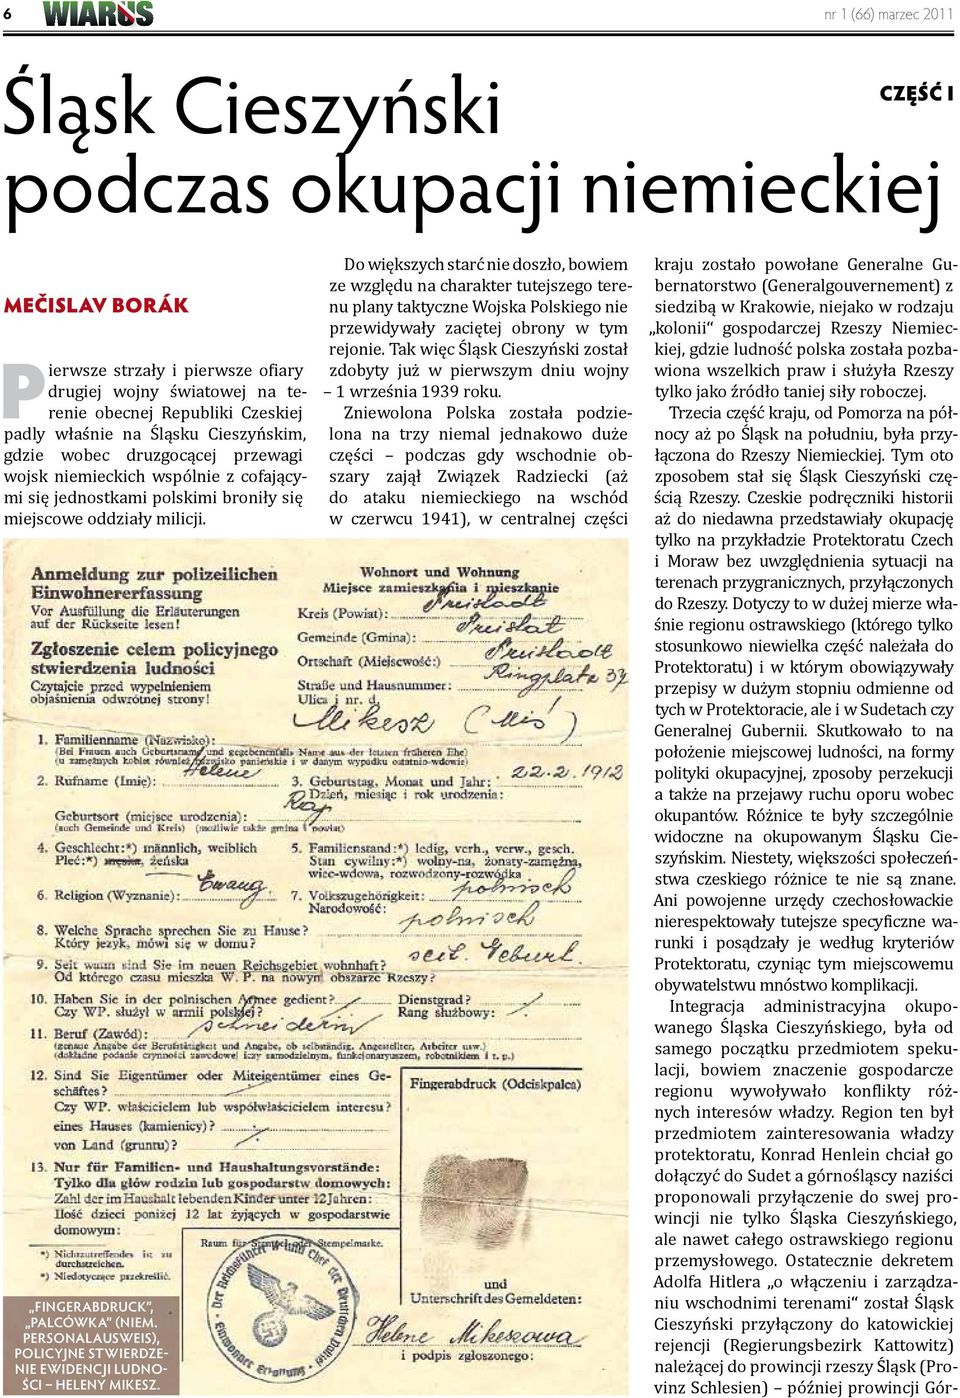 Personalausweis), Policyjne stwierdzenie ewidencji ludności Heleny Mikesz.